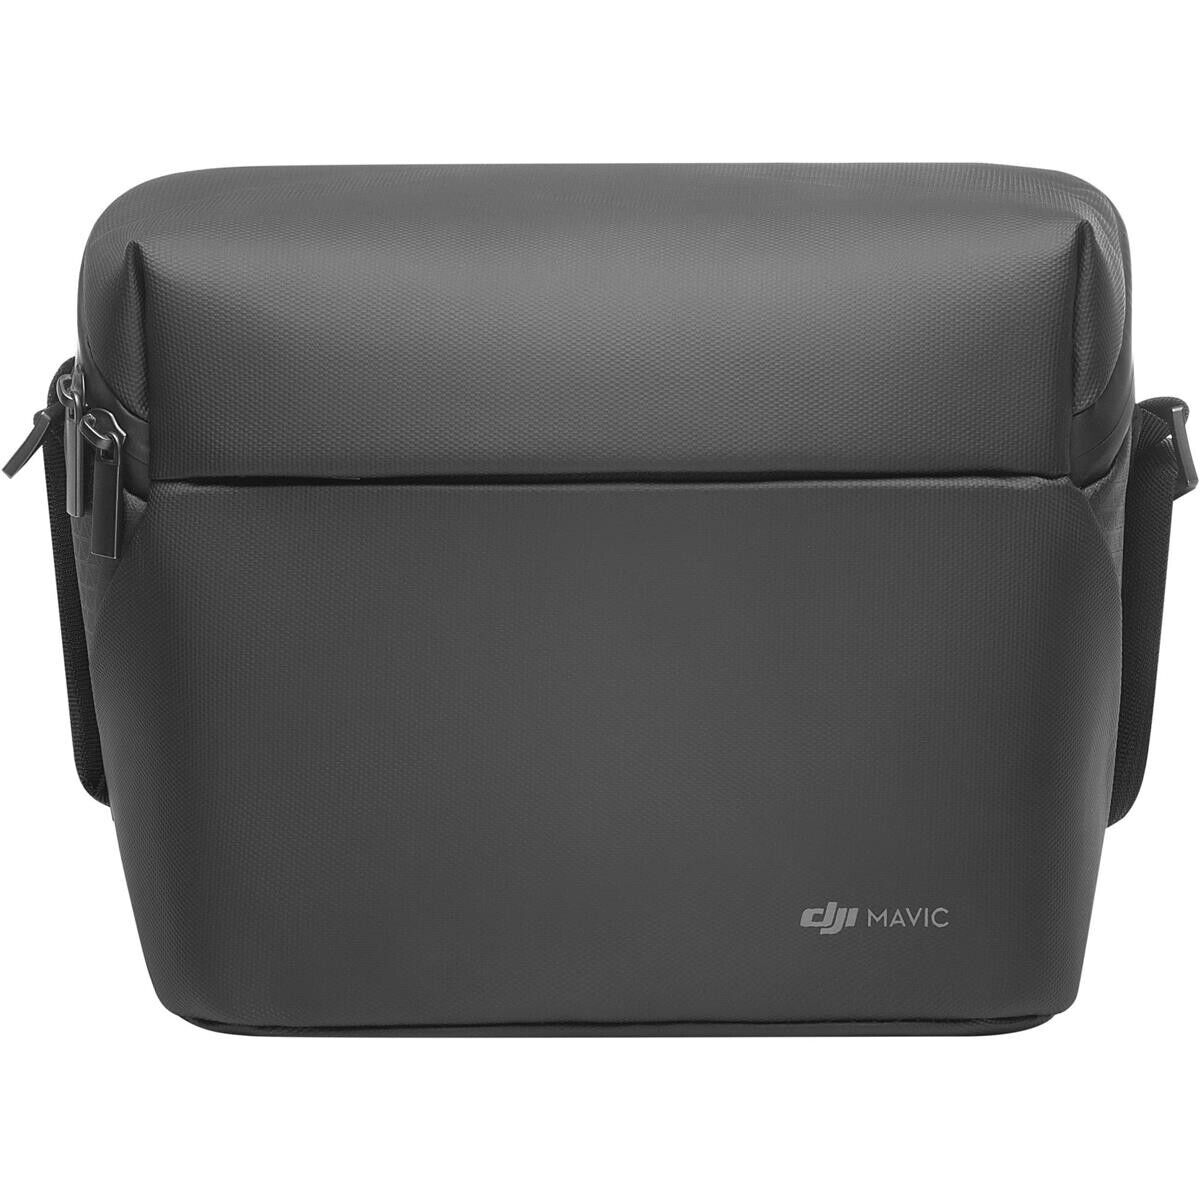 Mavic Air 2 Shoulder Bag by DJI